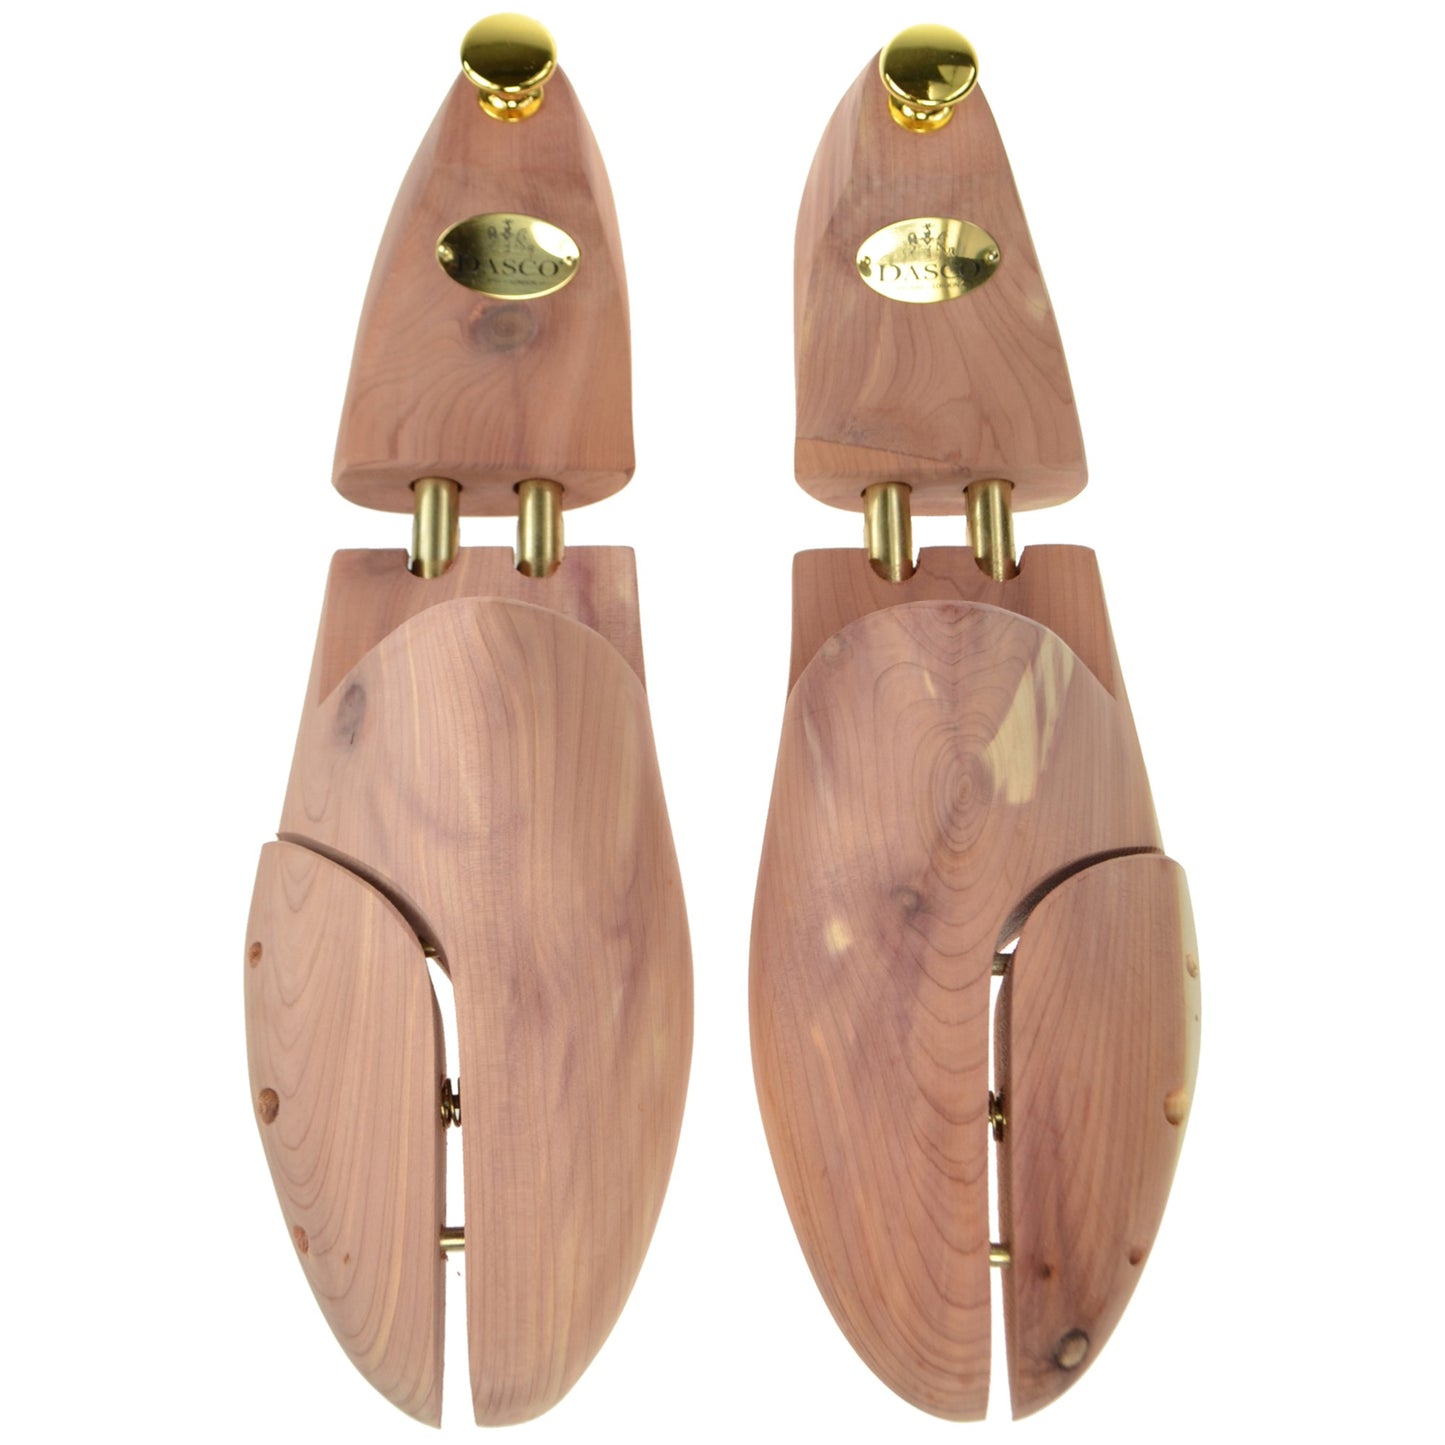 Dasco Cedar Side Split Shoe Trees - Size UK9 (EU43)